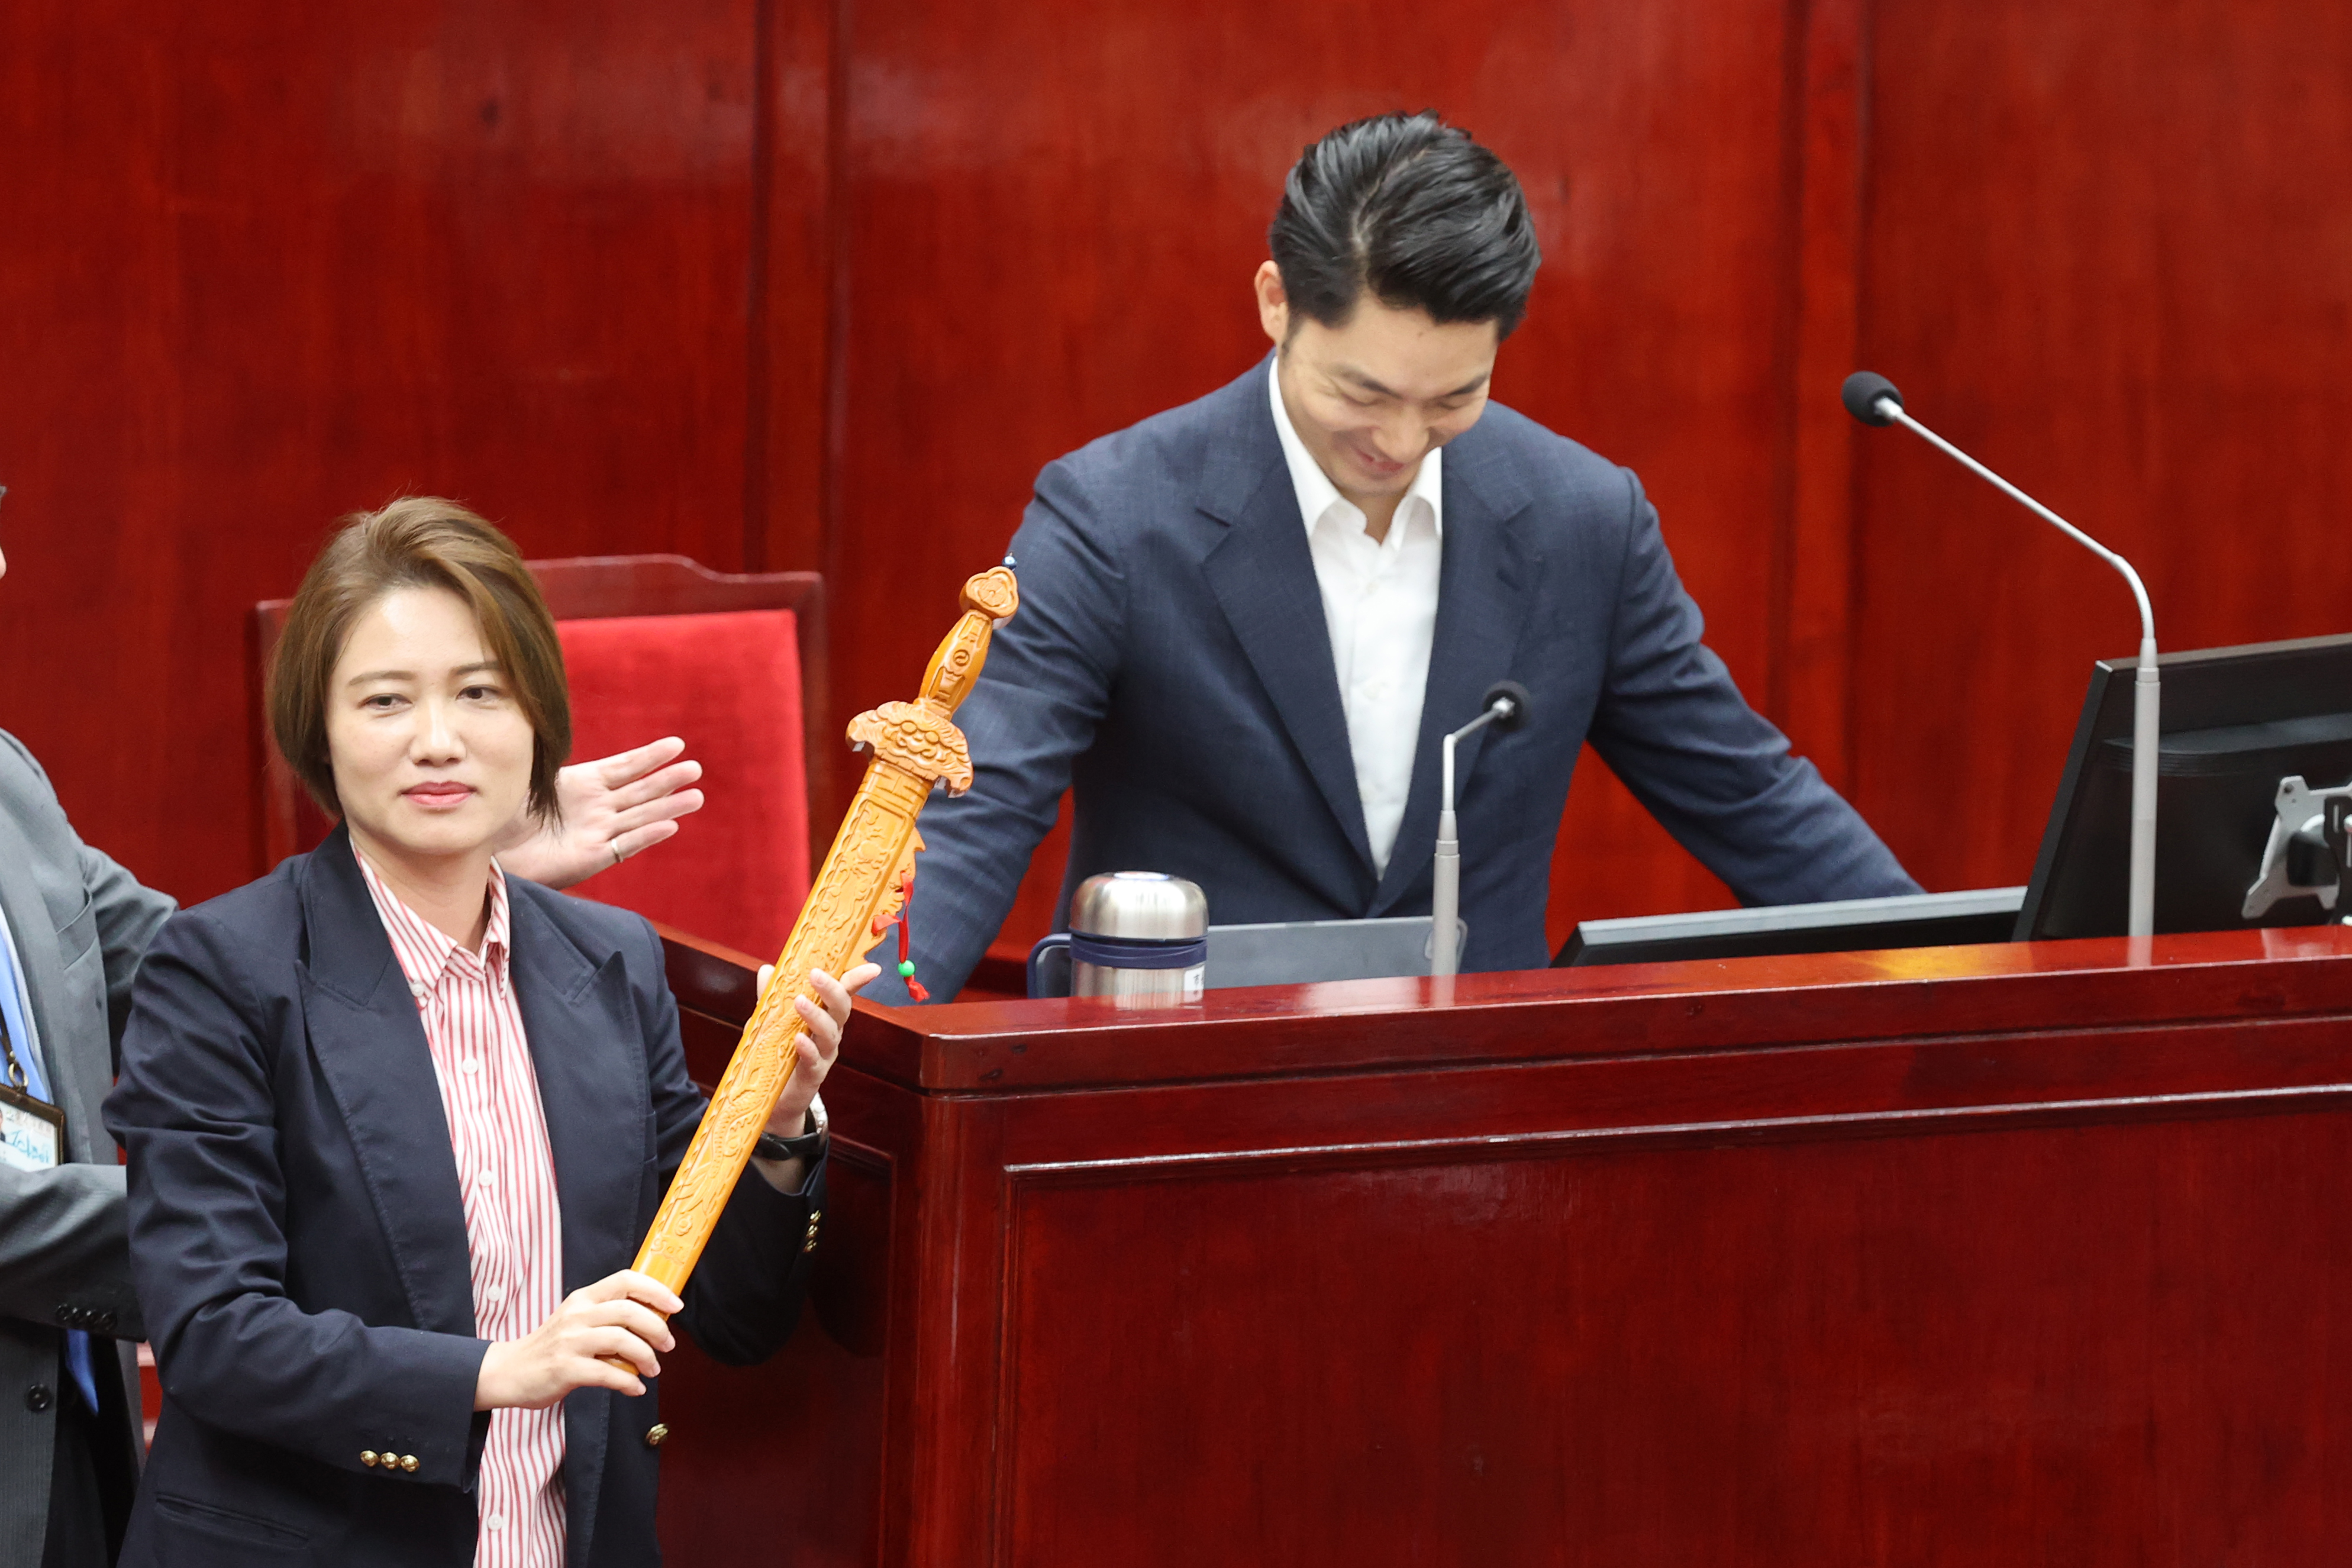 市议员林延凤（左前）质疑台北市政府与新寿有密会；随后上台赠送桃花剑给蒋市长。记者苏健忠／摄影